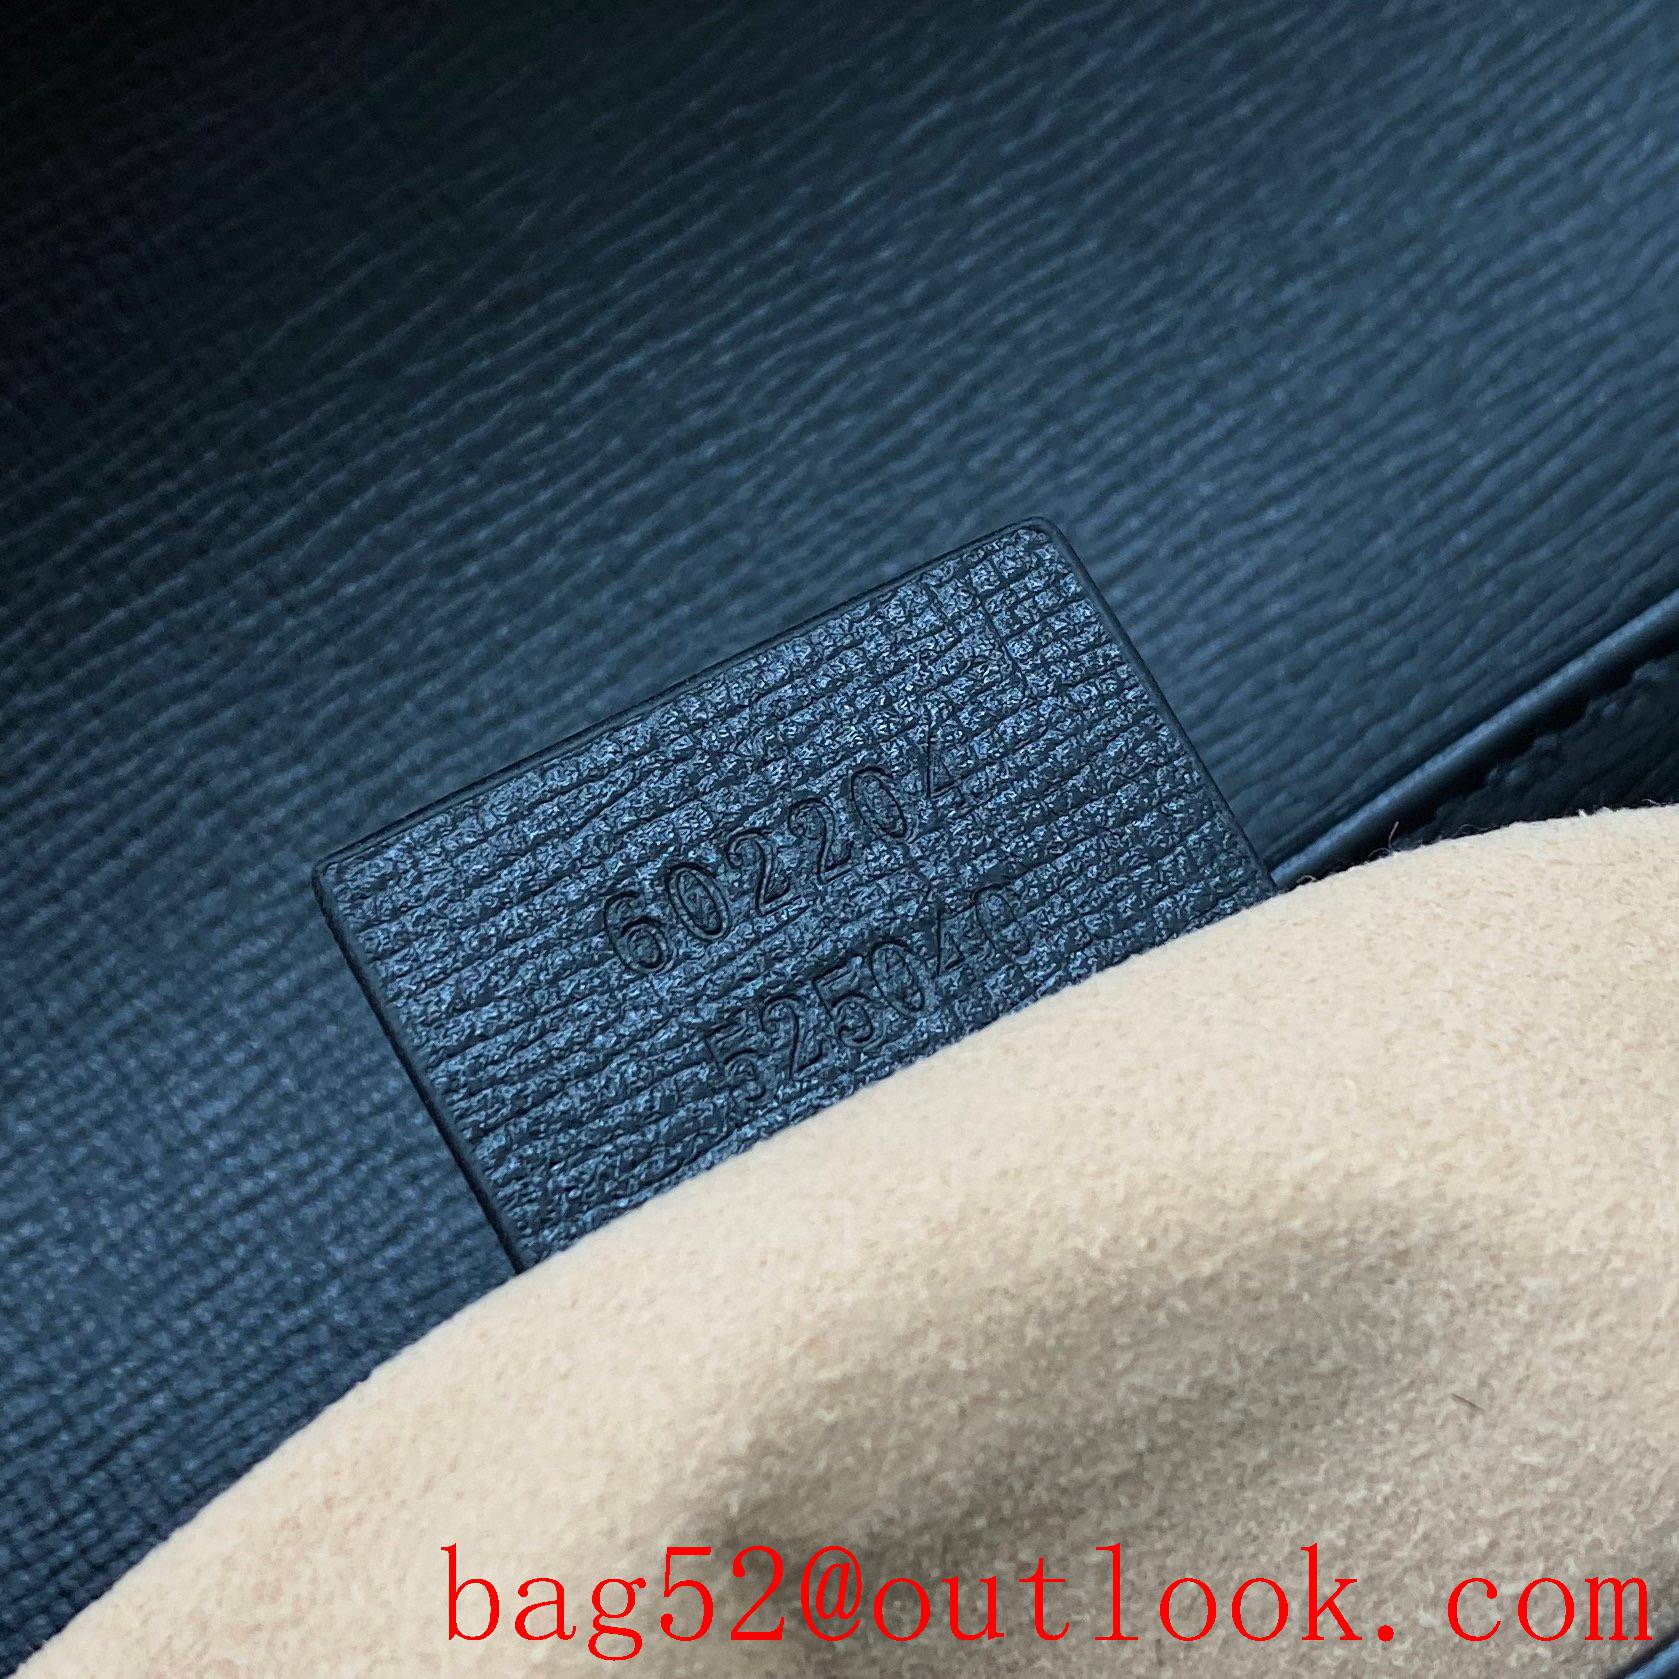 Gucci 1955 Full Leather Saddle black shoulder handbag